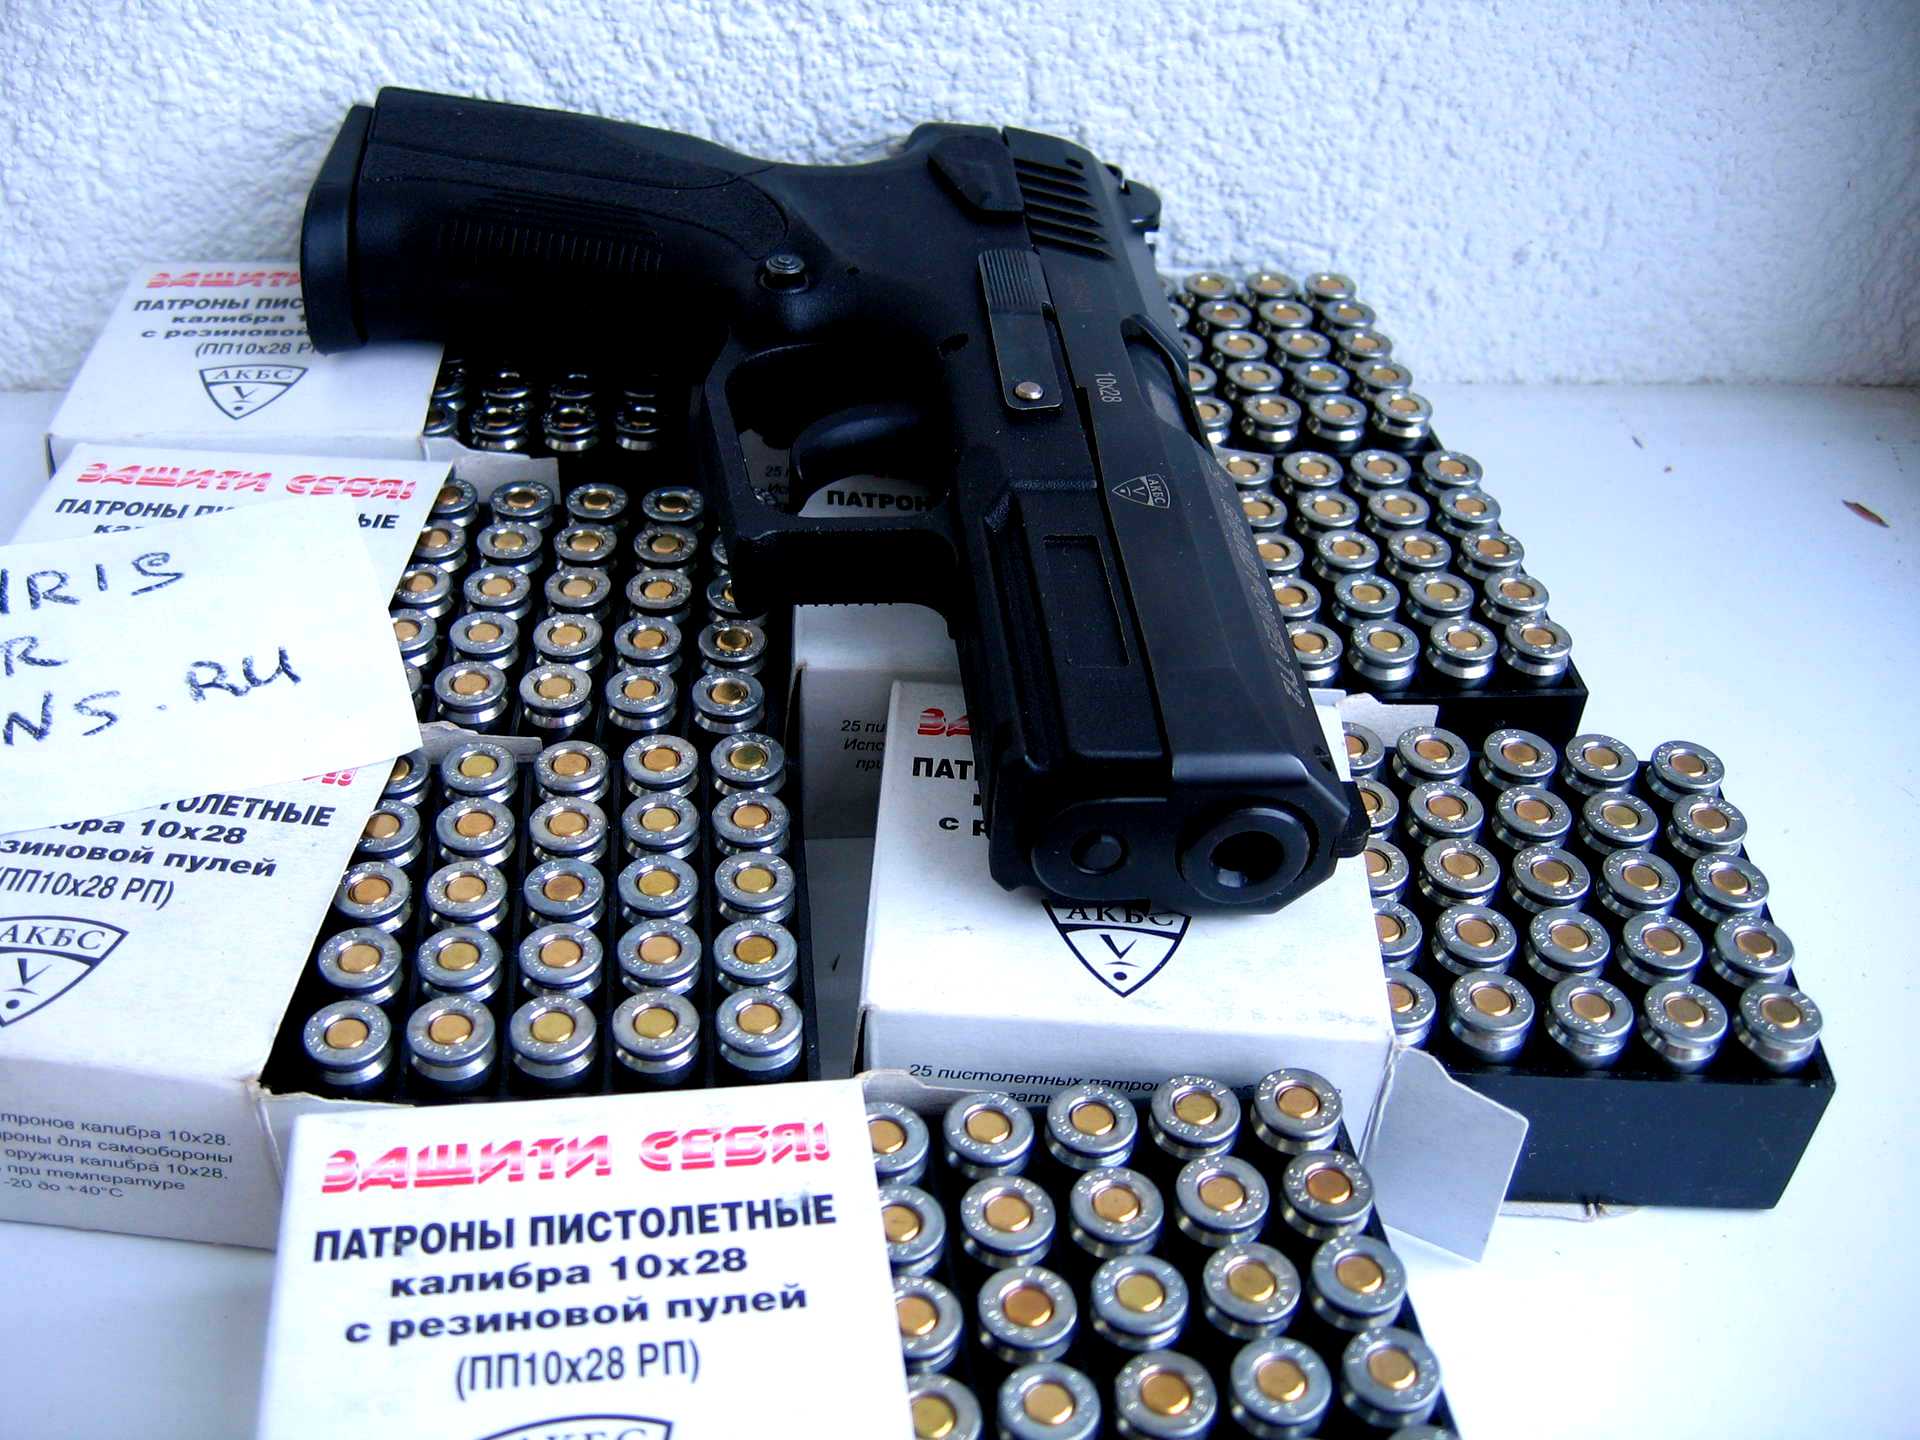 Где Купить Пистолет В Екатеринбурге